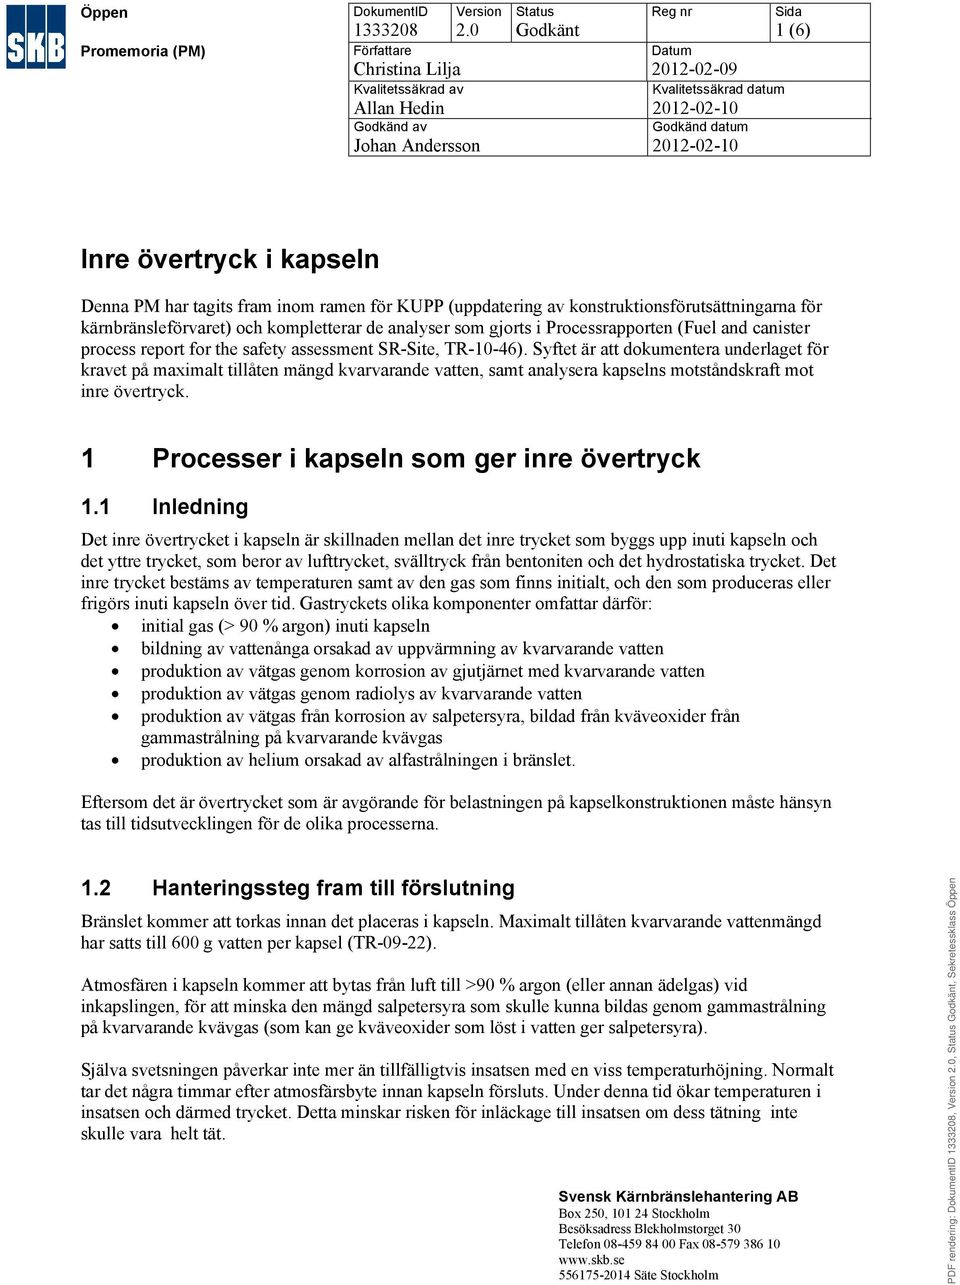 inom ramen för KUPP (uppdatering av konstruktionsförutsättningarna för kärnbränsleförvaret) och kompletterar de analyser som gjorts i Processrapporten (Fuel and canister process report for the safety